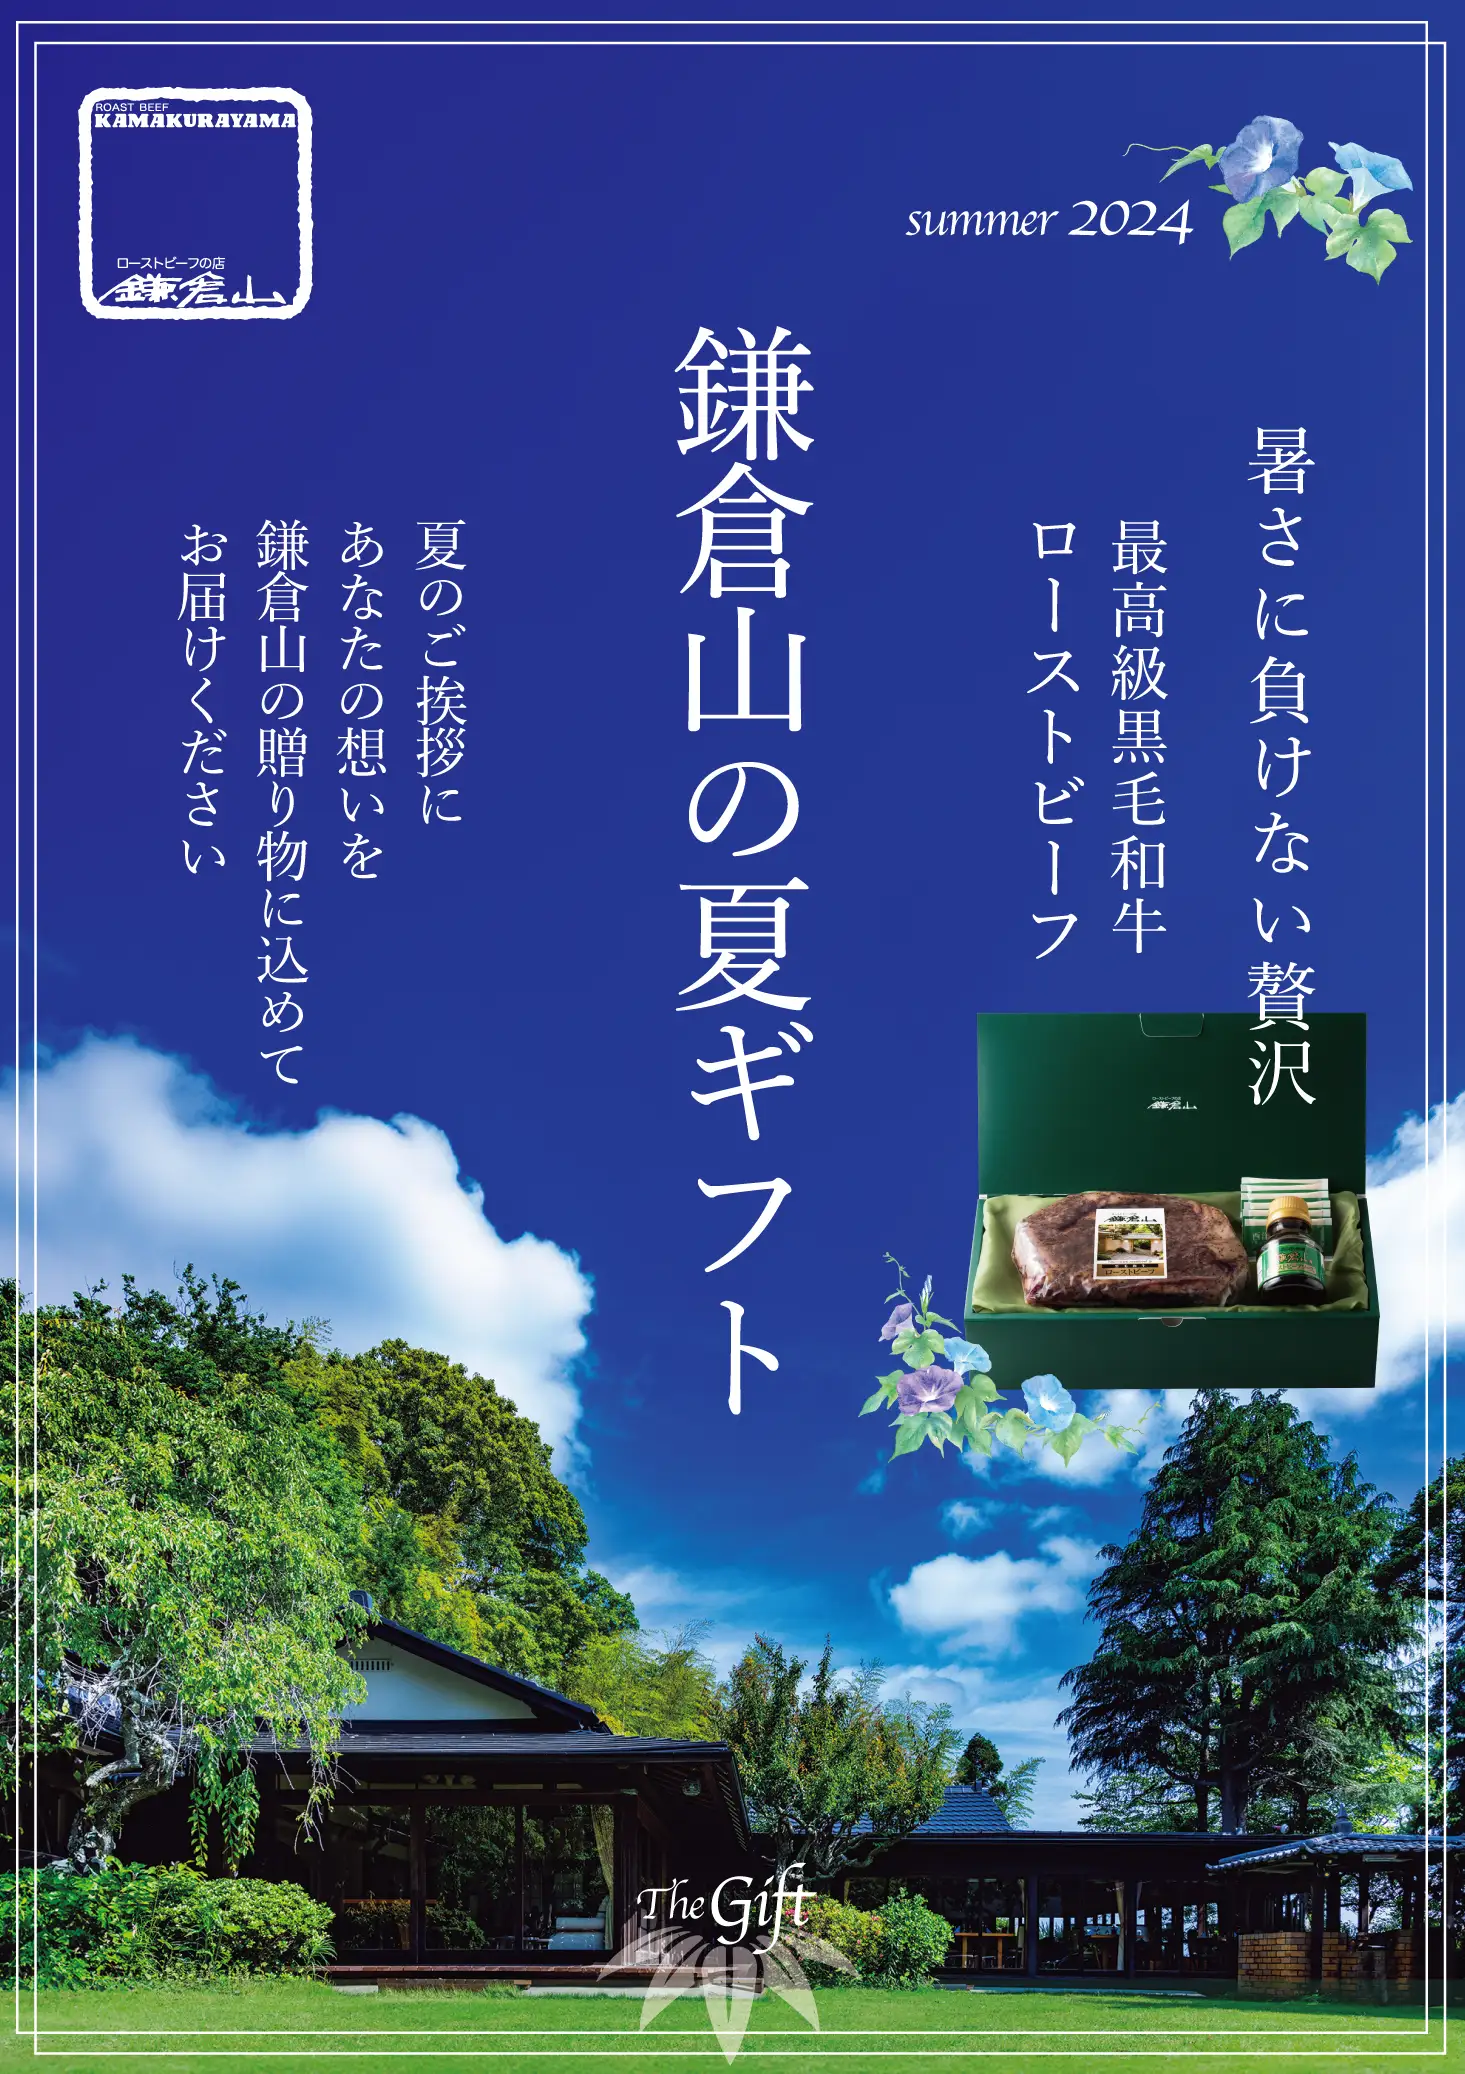 鎌倉山 夏ギフト 広告バナー画像